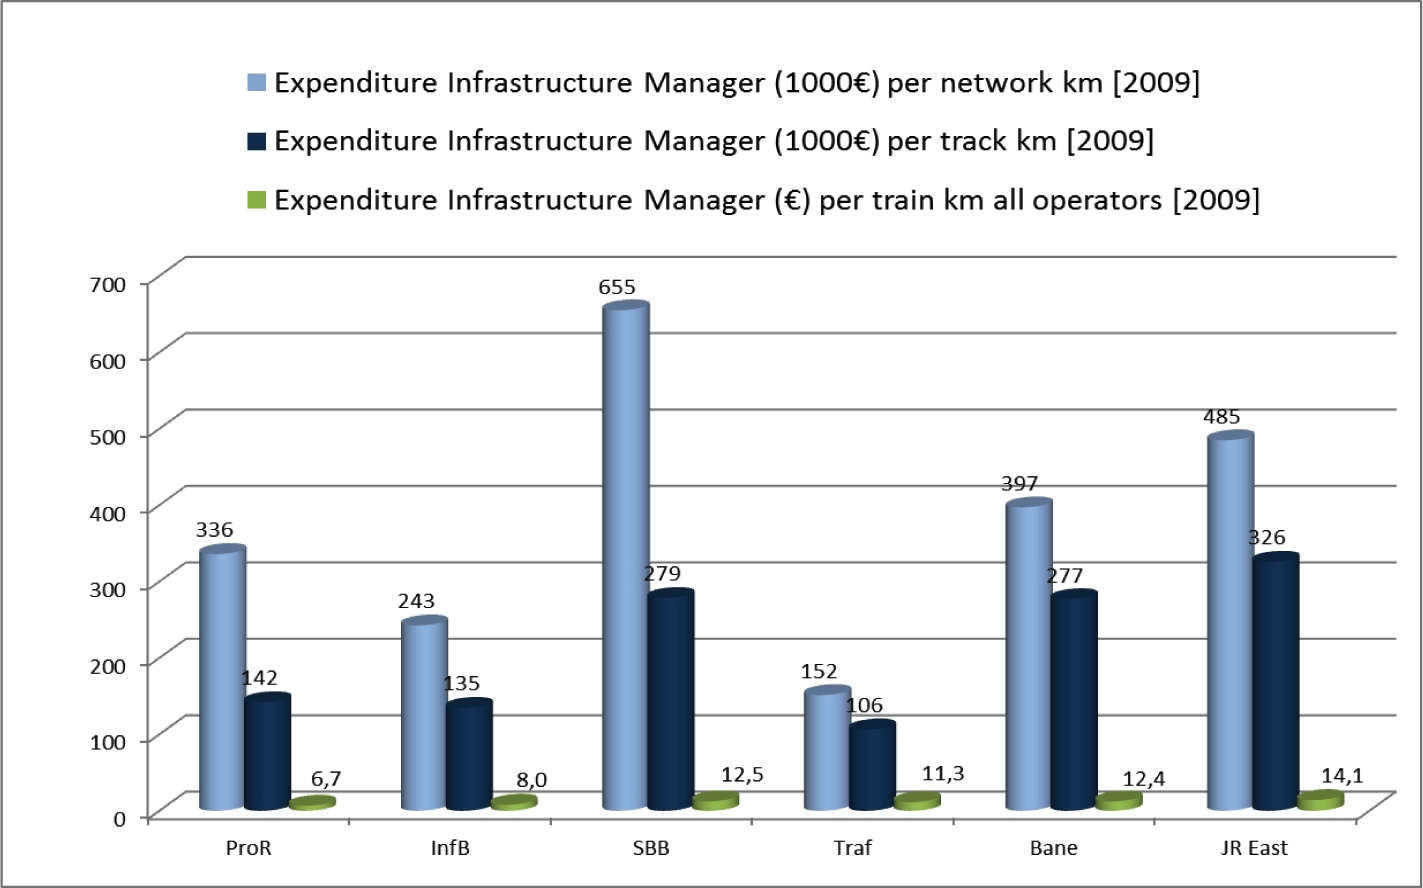 Figuur 42: Gemiddelde exploitatiekosten per netwerkkilometer, per spoorkilometer en per treinkilometer in 2009